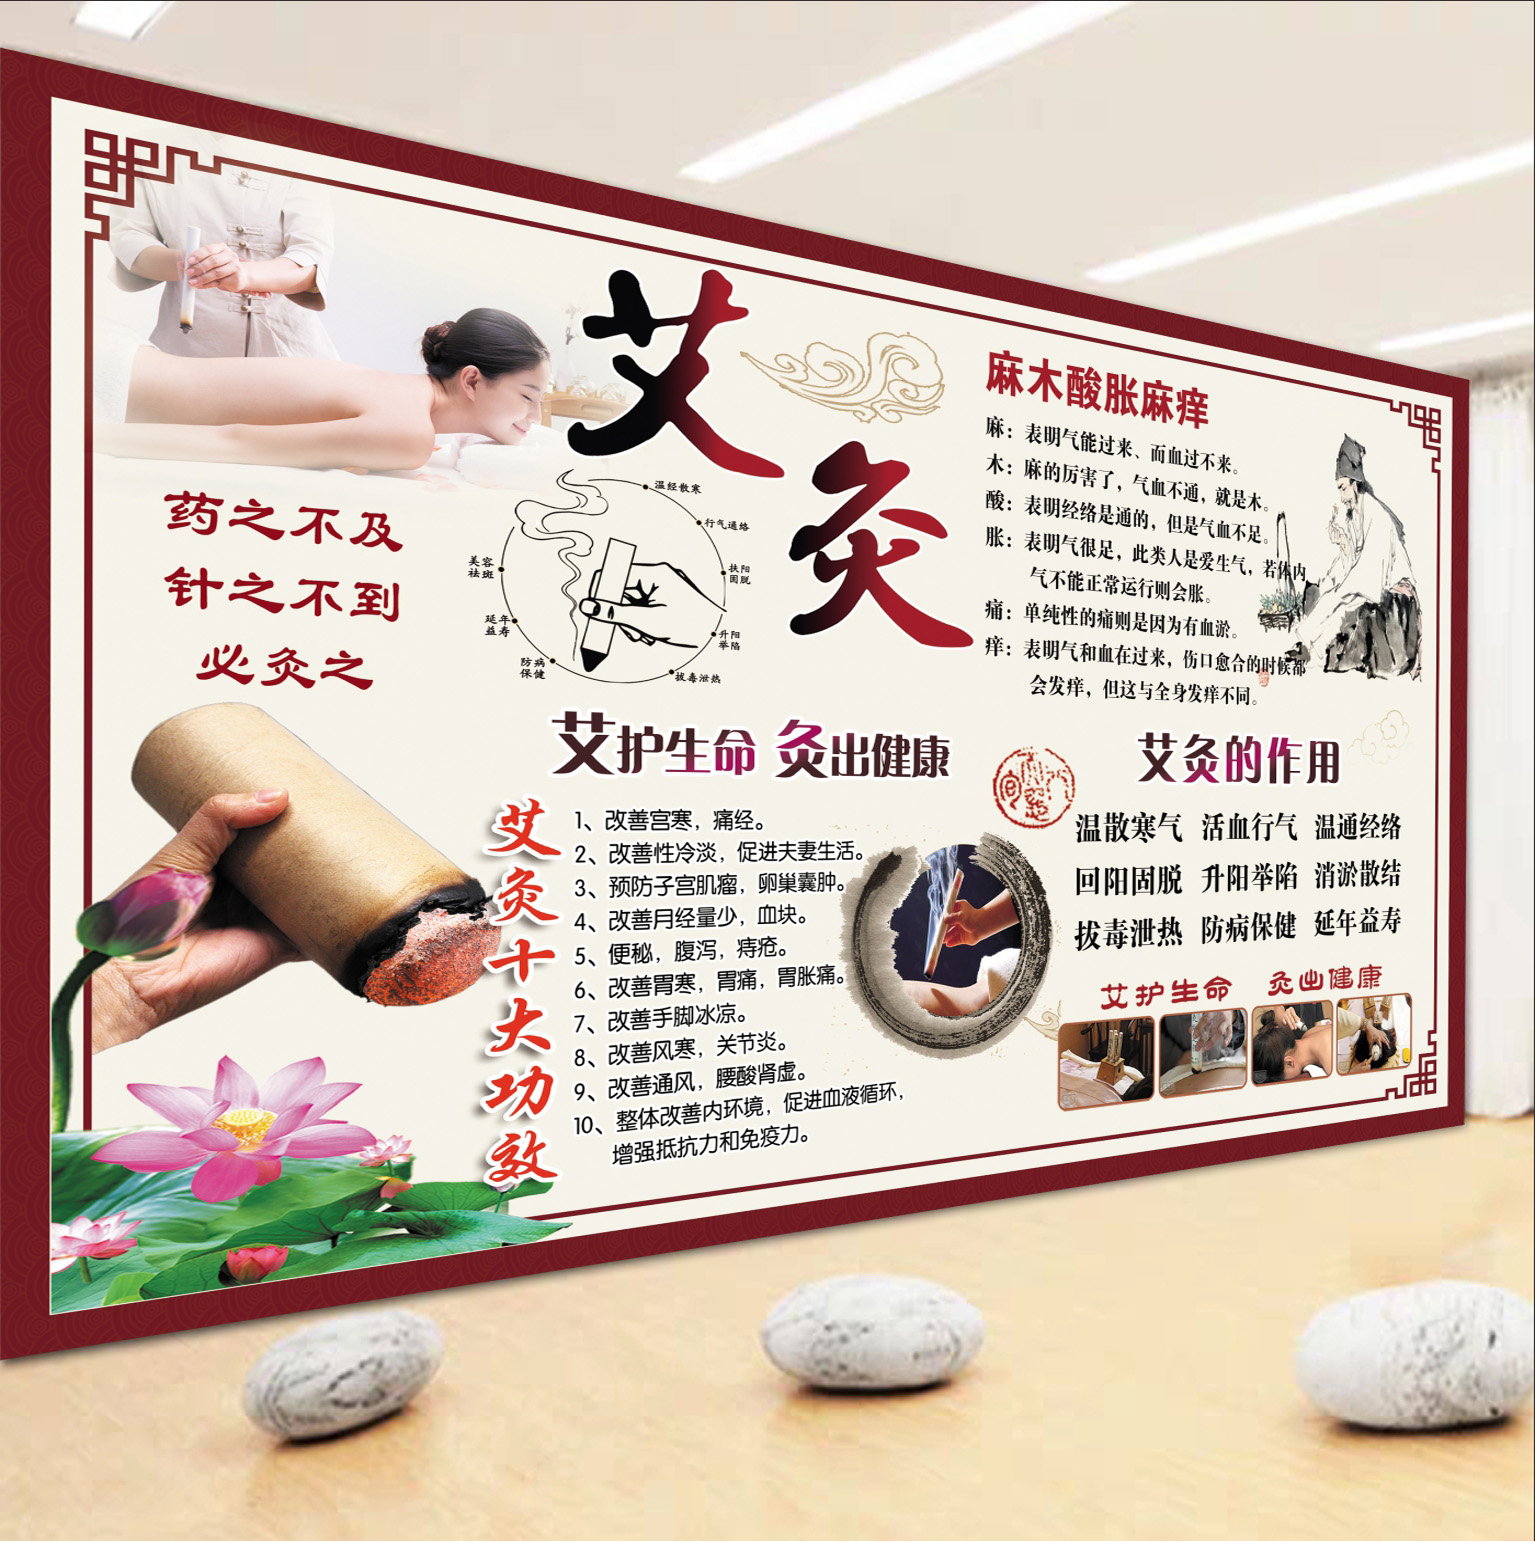 中医养生馆艾灸广告宣传四季养生艾灸展板装饰挂图中医艾灸墙贴画